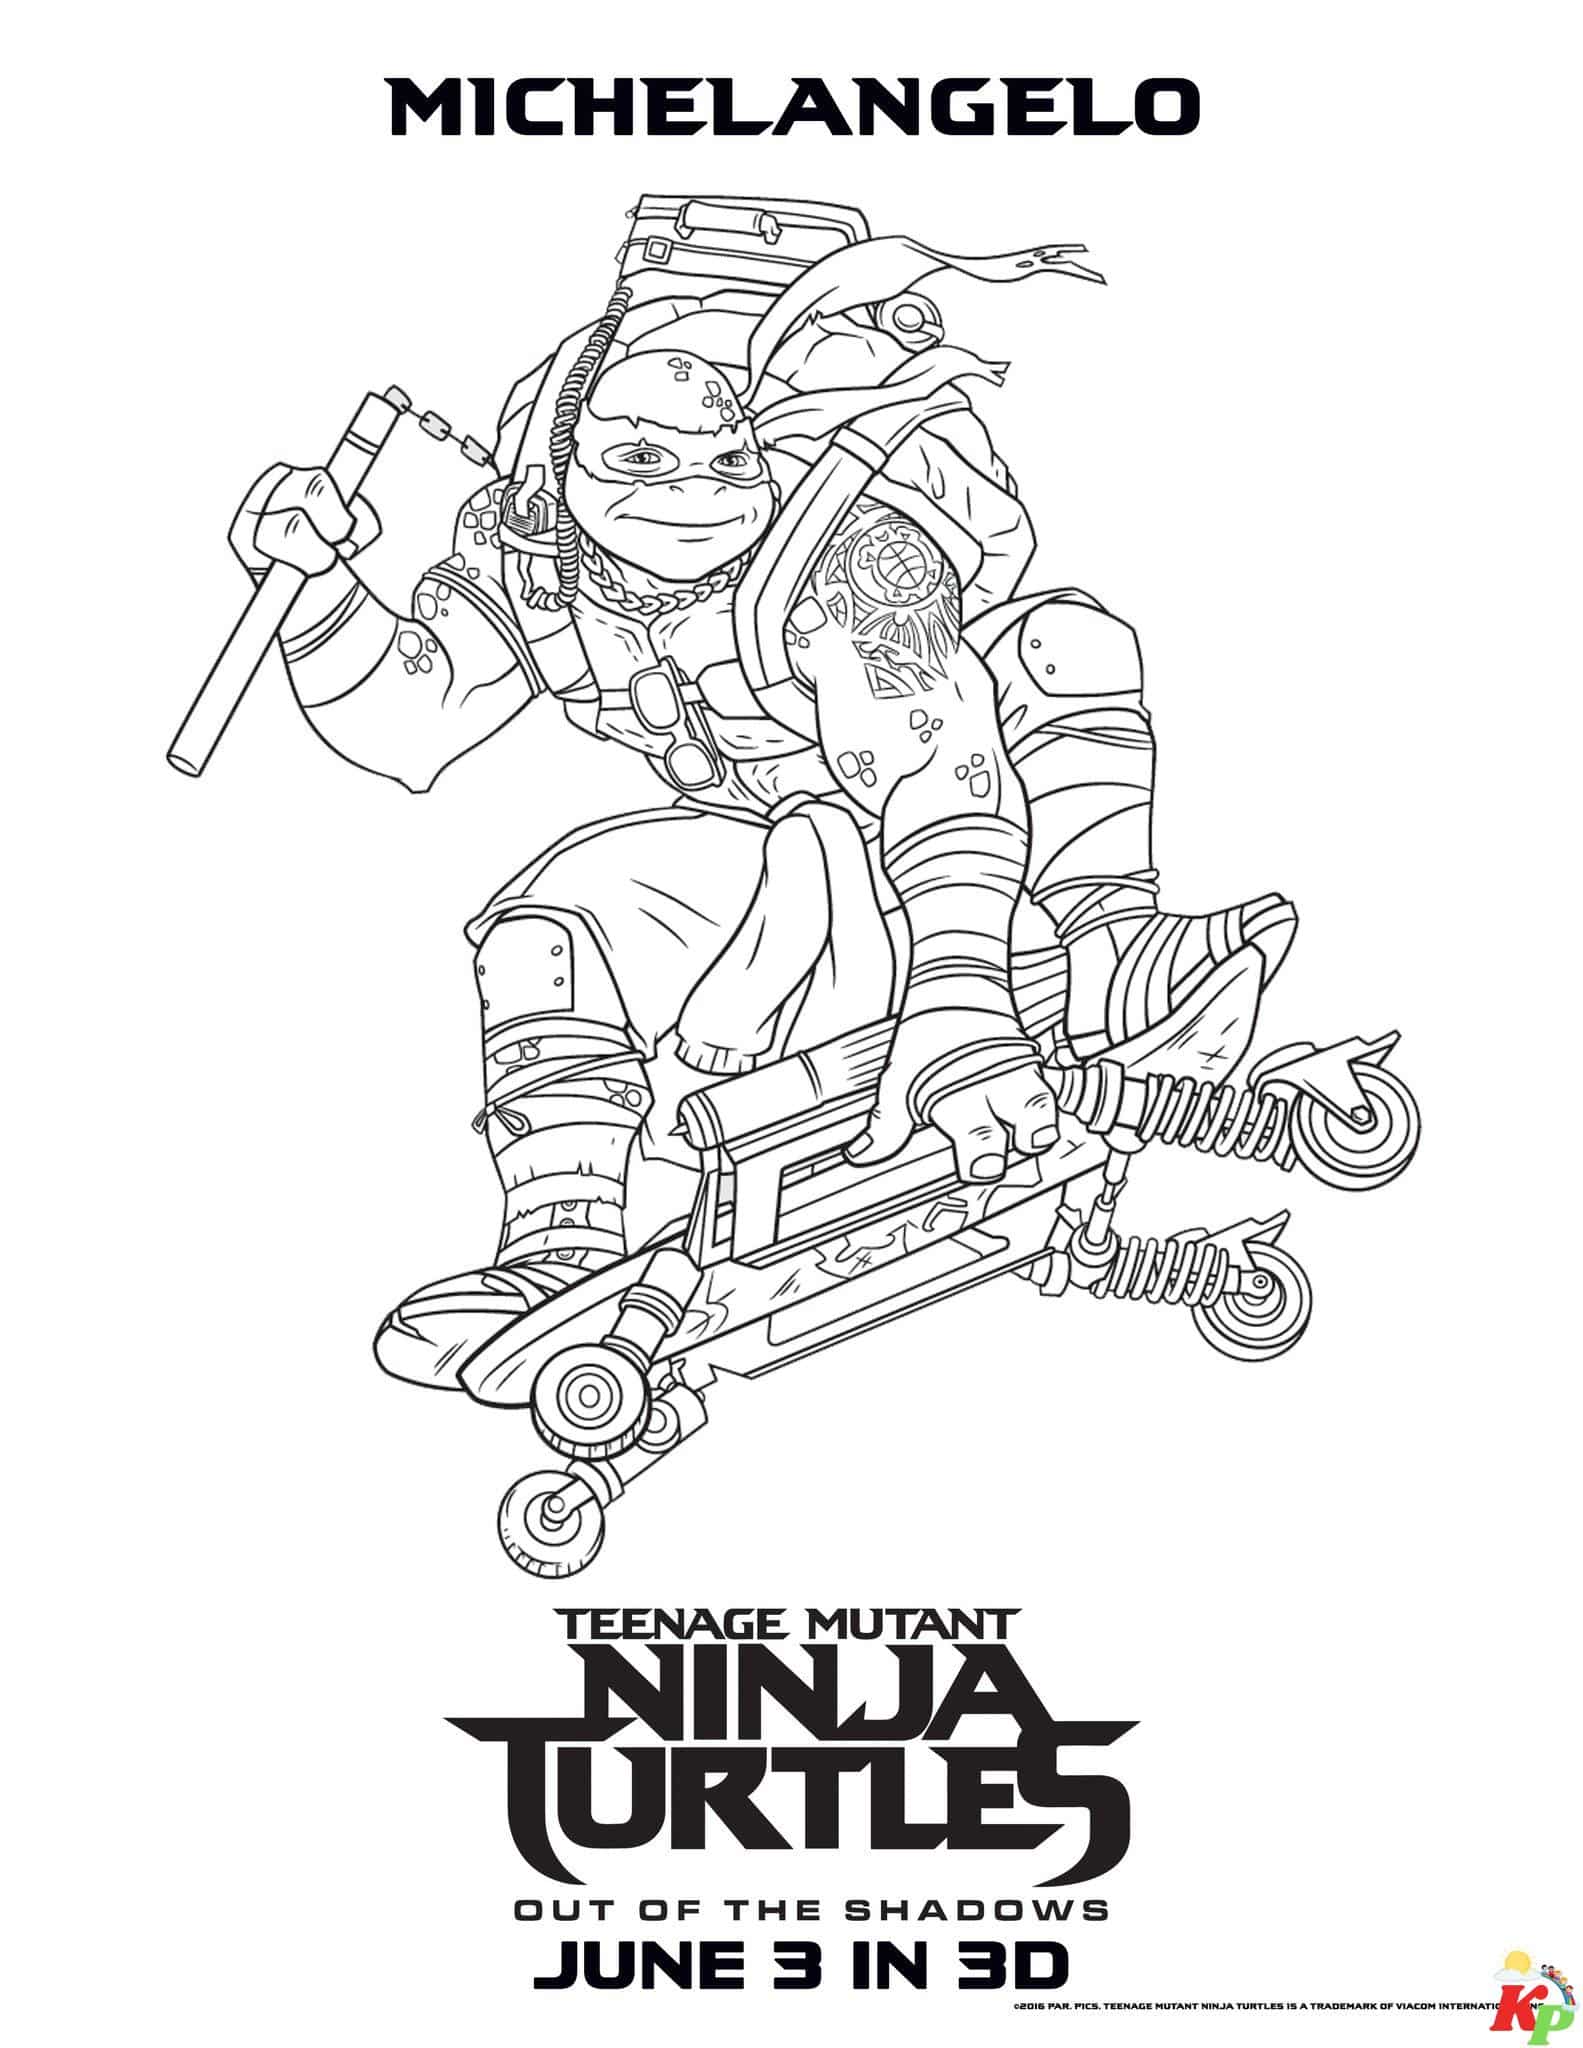 Ninja turtles 3